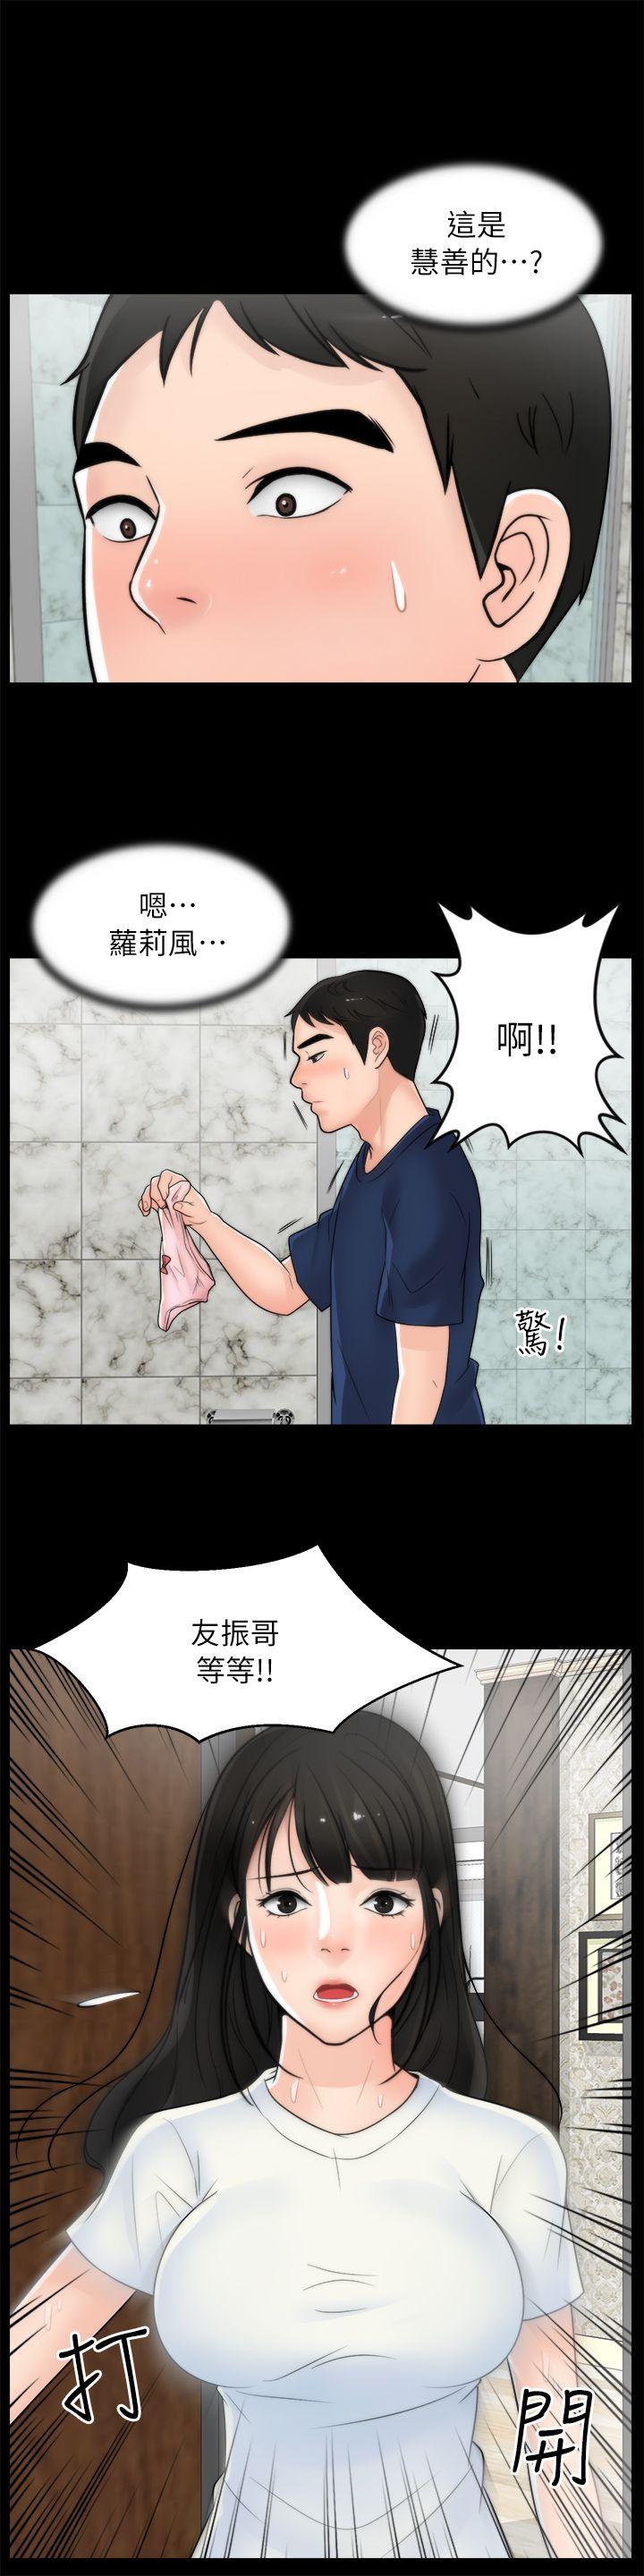 韩国污漫画 偷偷愛 第18话-小女儿 25